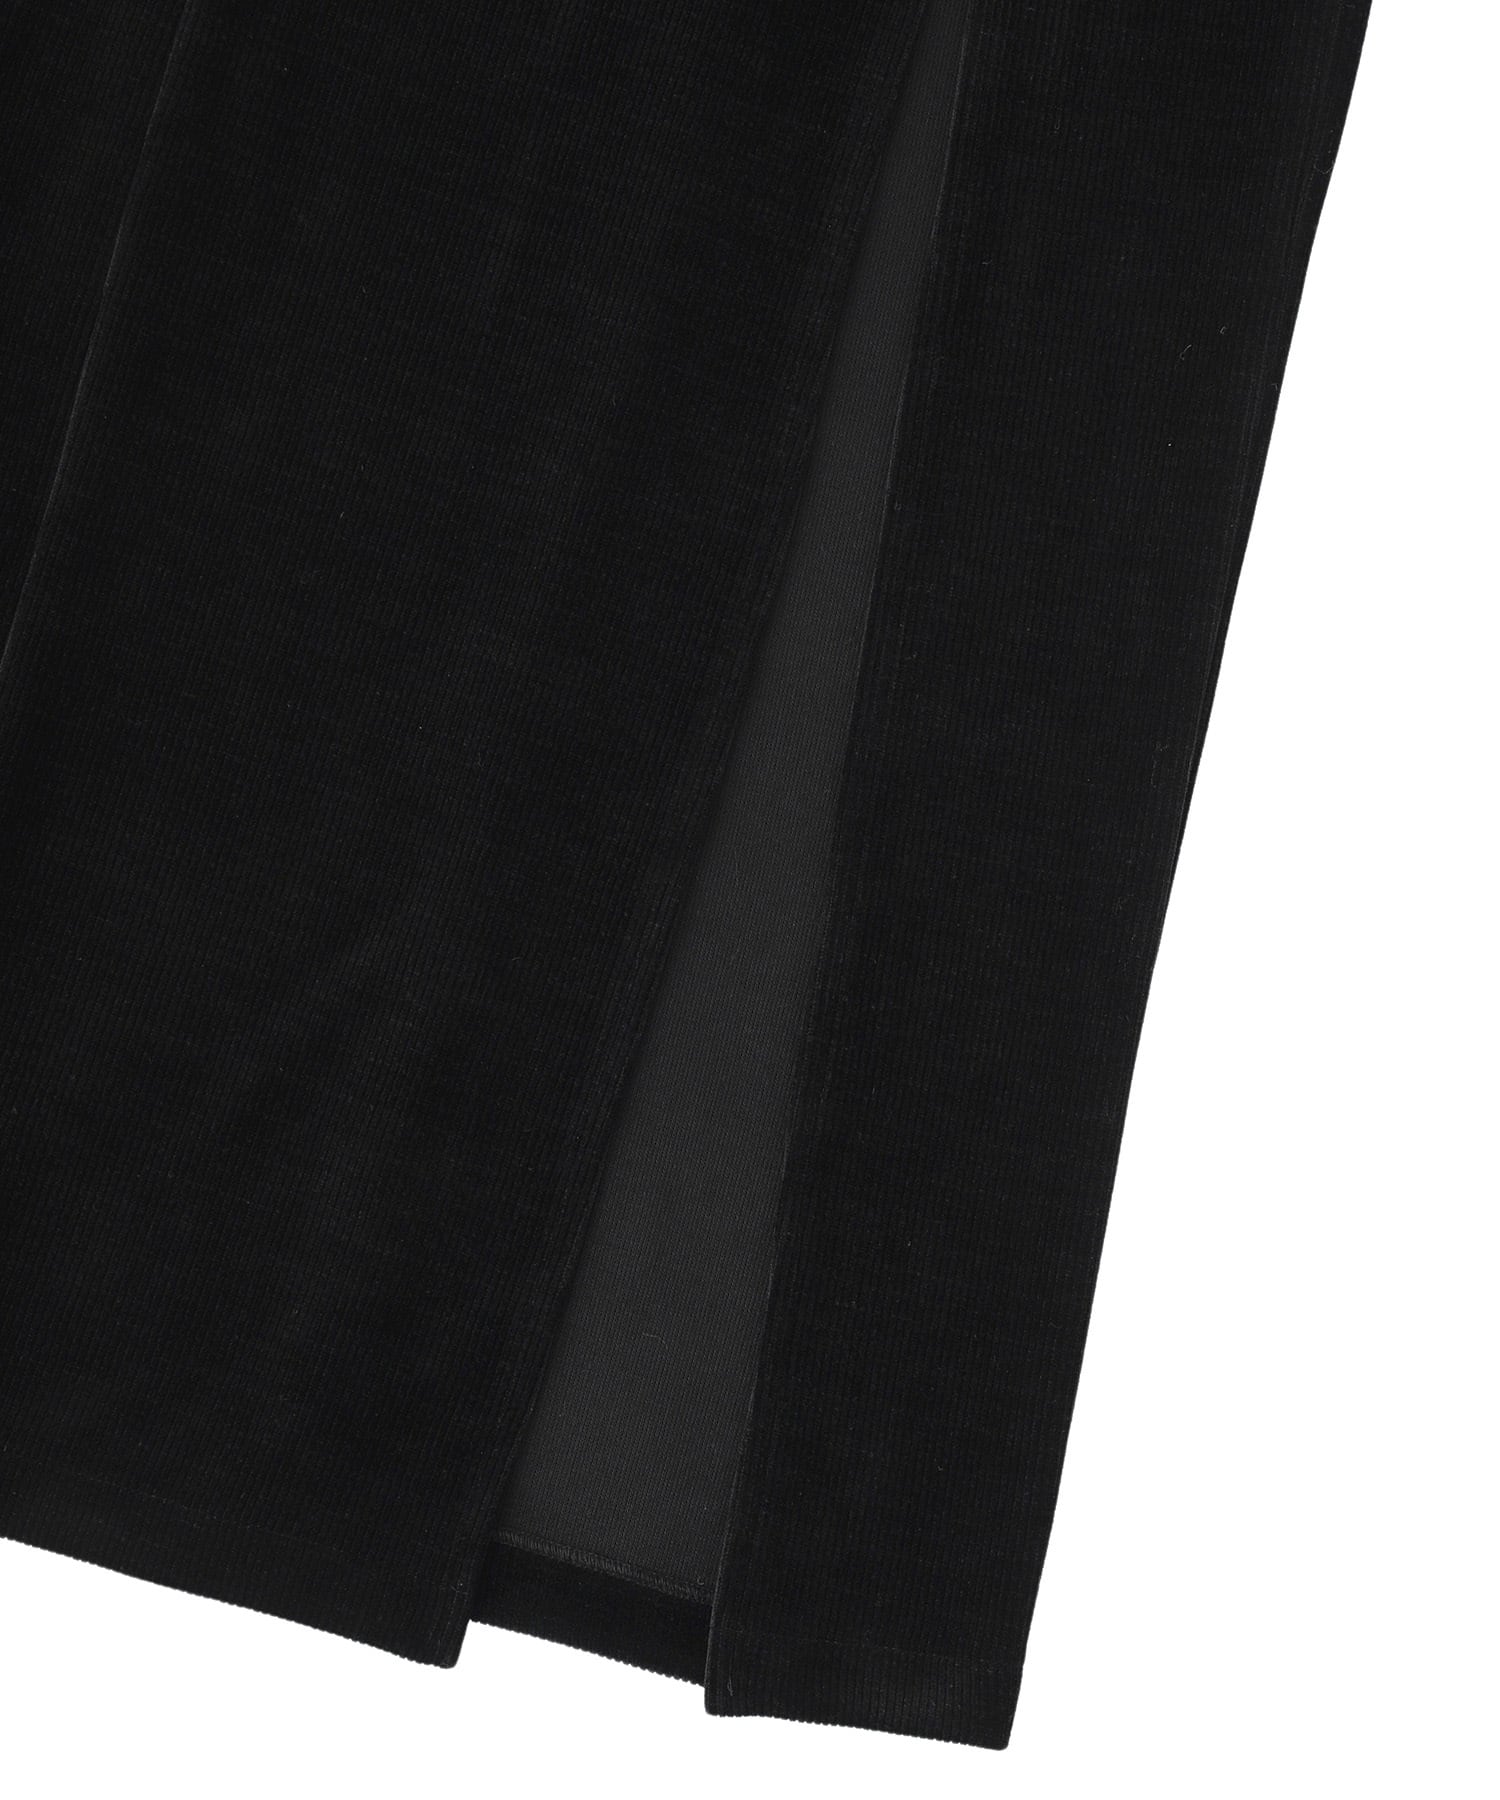 Mole slit long skirt